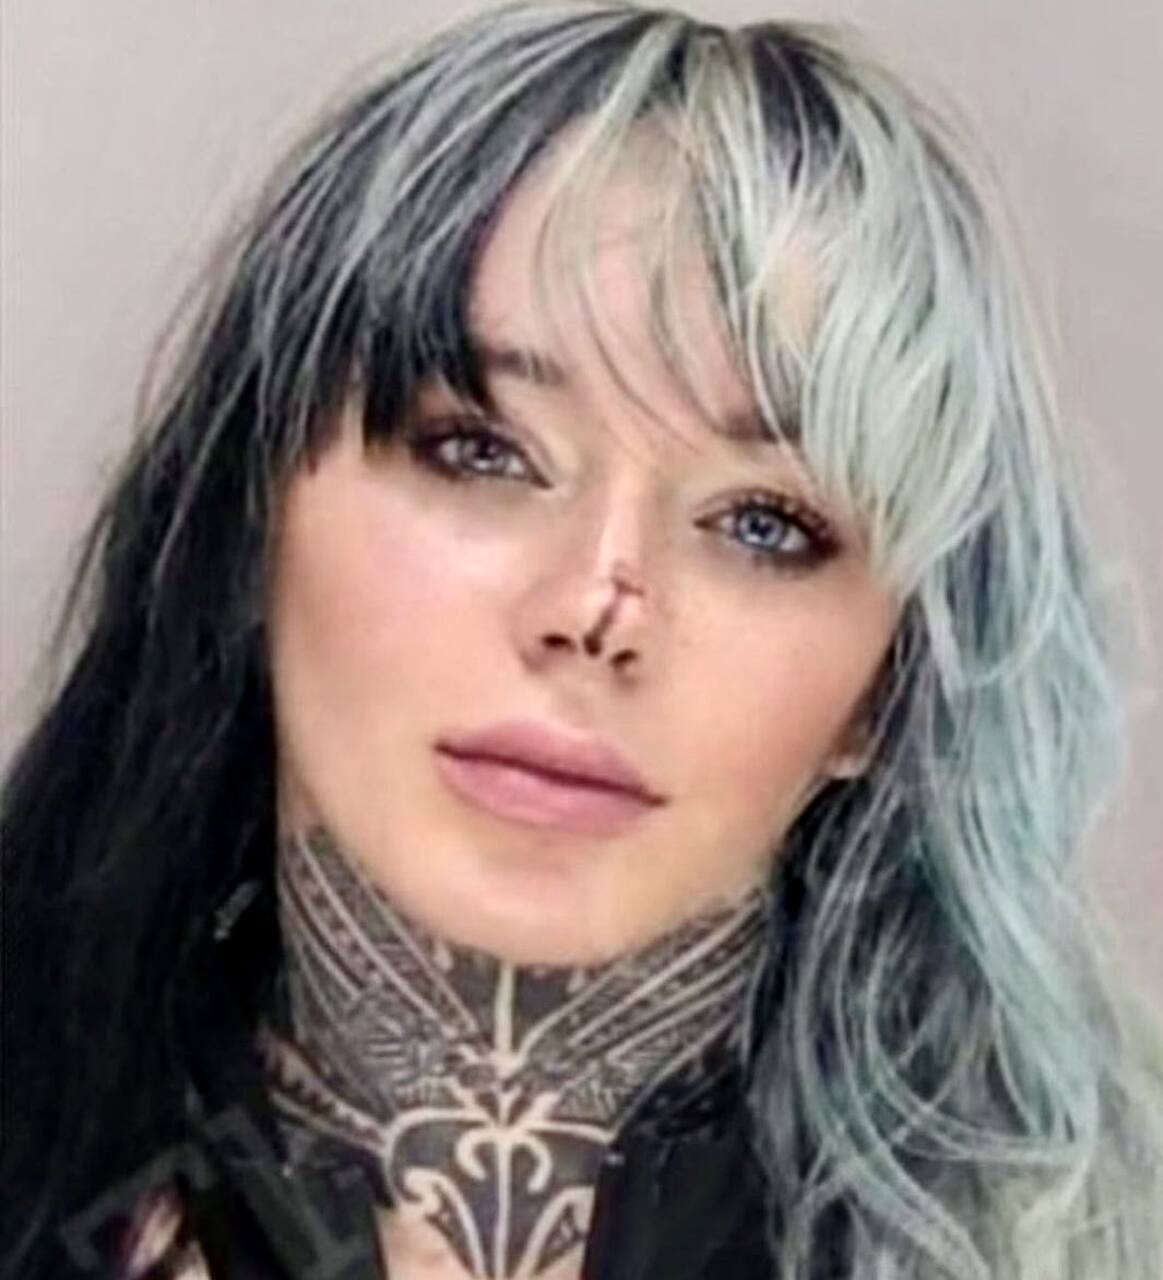 modell tjener $24 000 på en uke etter at arrestasjonsfoto gikk viralt på internett